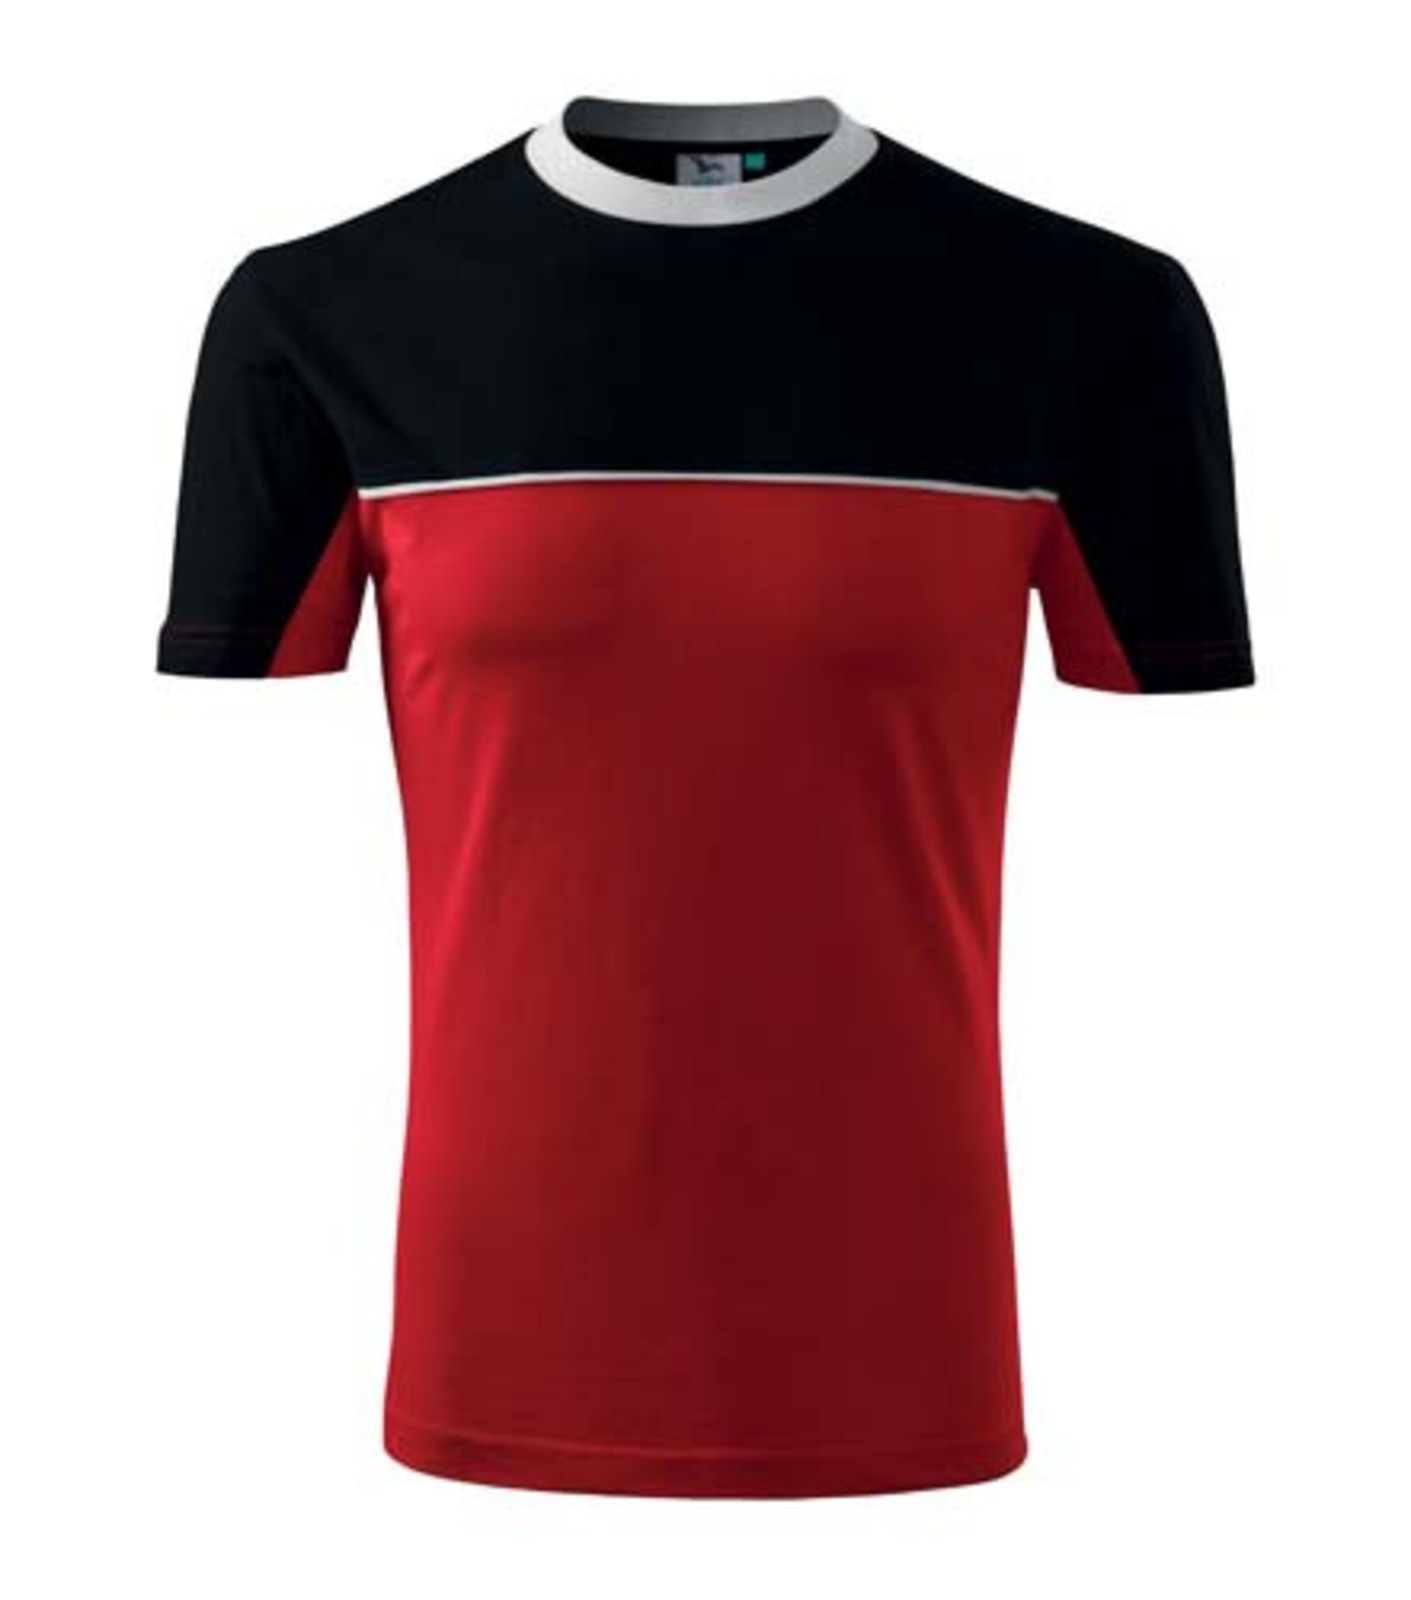 Unisex tričko Rimeck Colormix 109 - veľkosť: 3XL, farba: červená/čierna